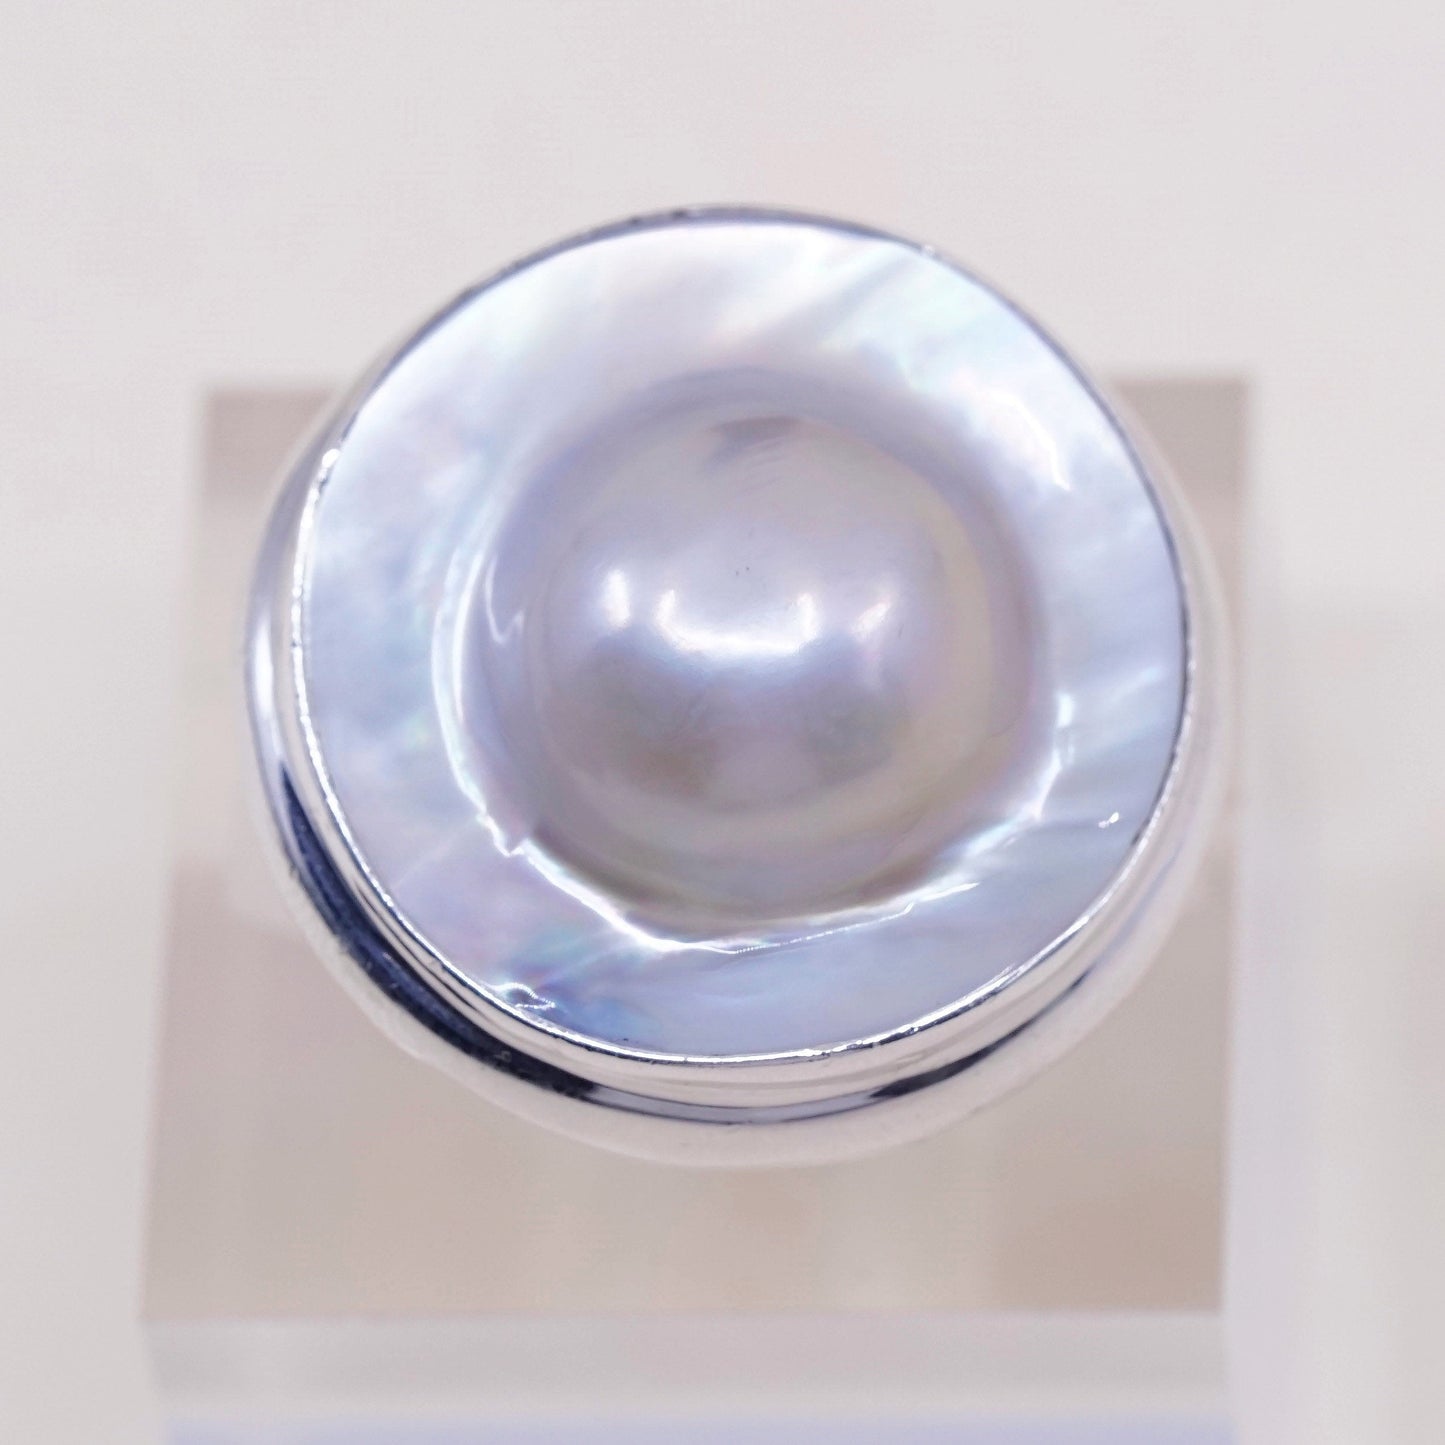 sz 7, vtg SLJ Sterling silver handmade ring, modern 925 band w/ bluster pearl